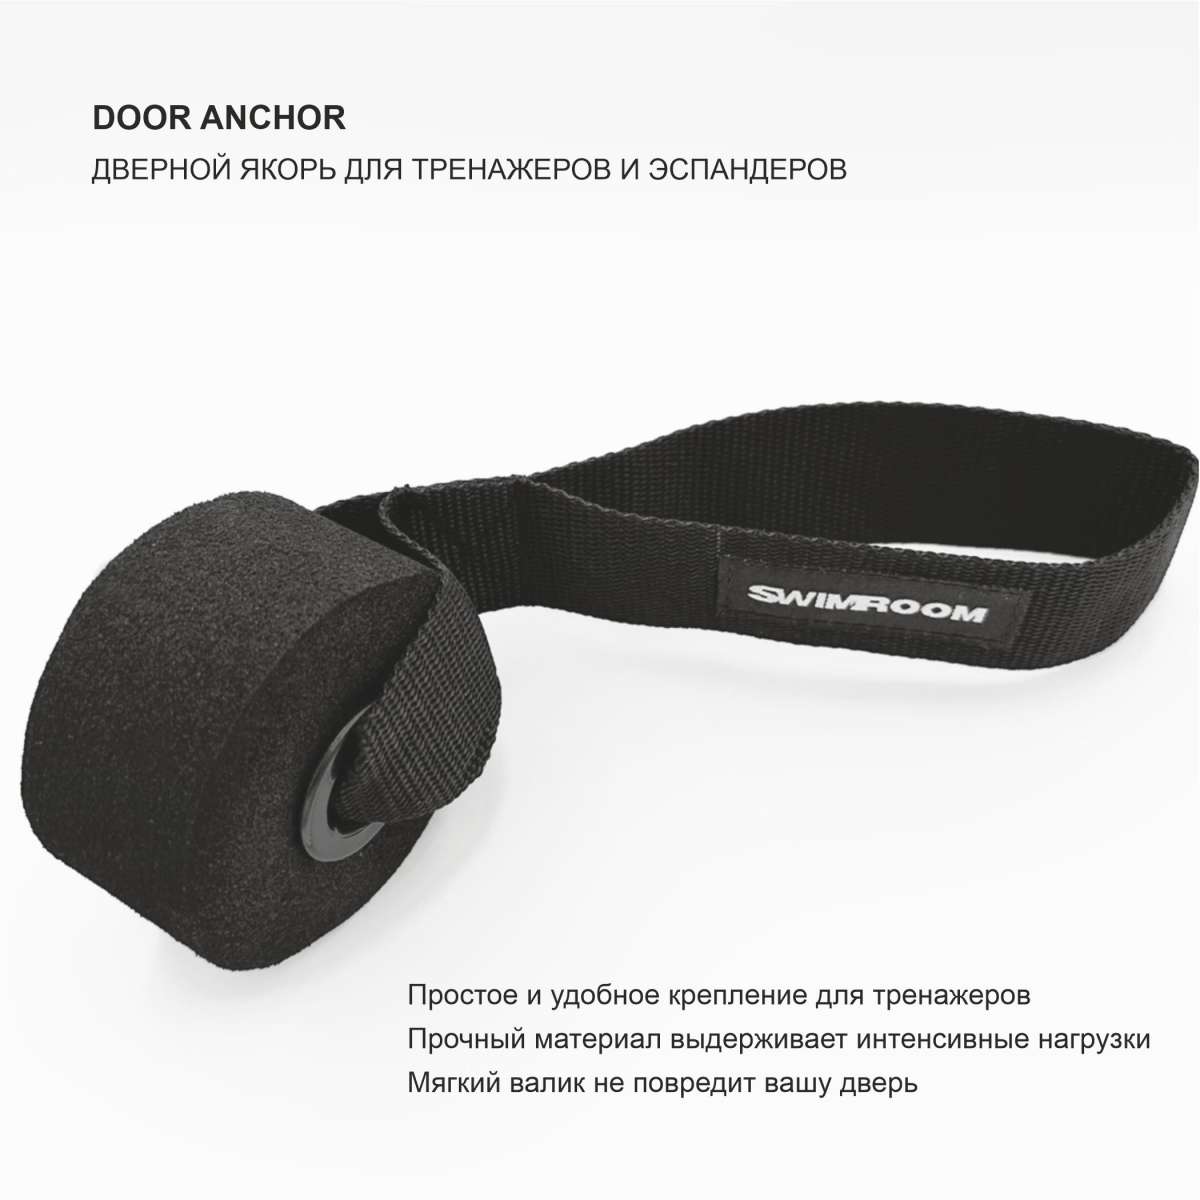 Дверной якорь для тренажеров и эспандеров " Door Anchor"